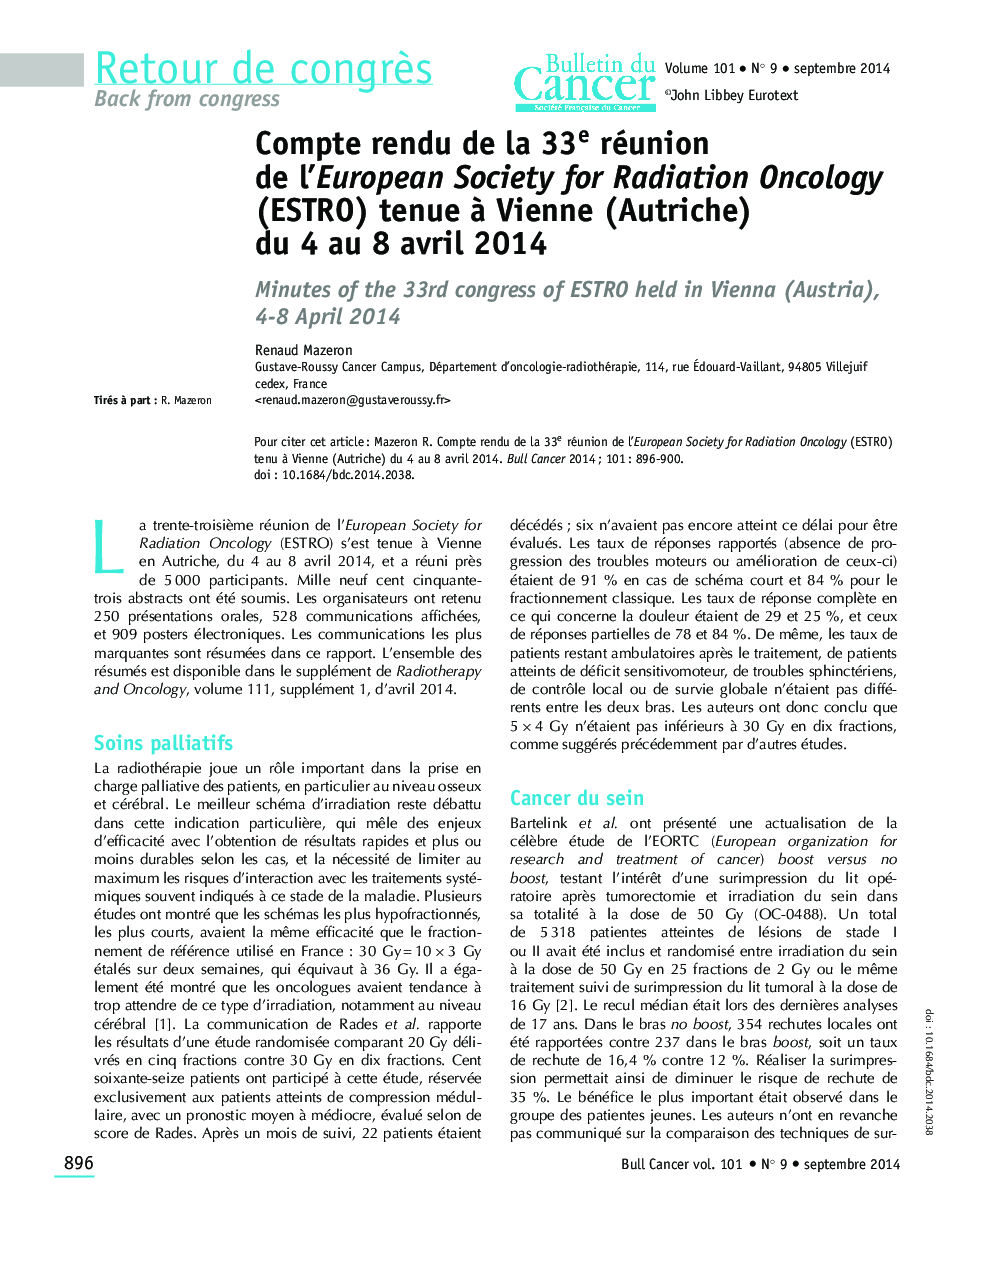 Compte rendu de la 33e réunion de l'European Society for Radiation Oncology (ESTRO) tenue Ã  Vienne (Autriche) du 4 au 8 avril 2014